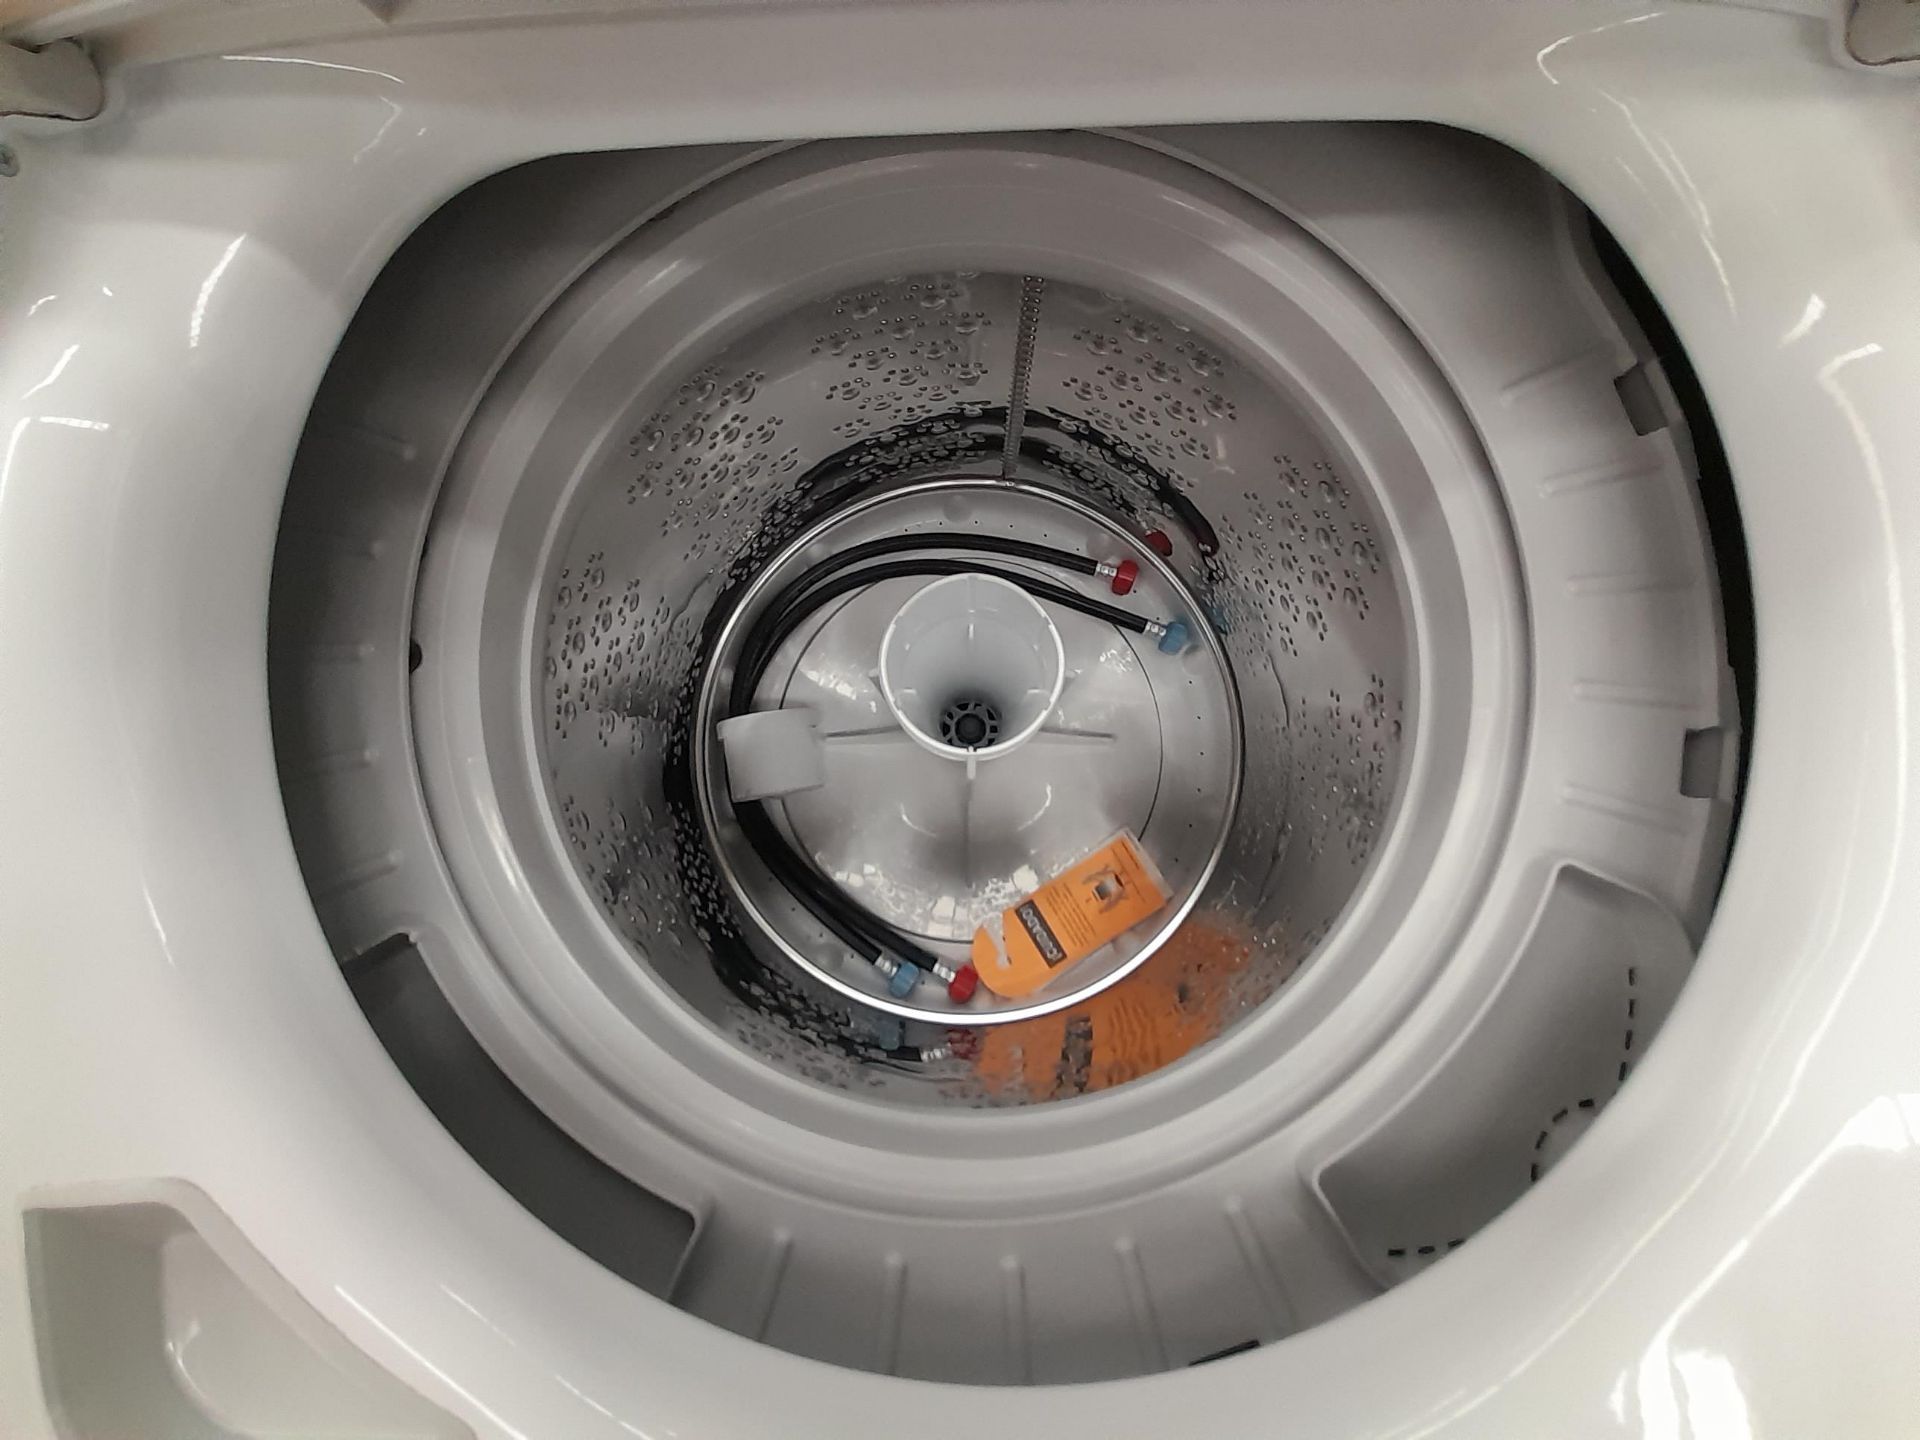 Lote de 2 lavadoras Contiene: 1 lavadora de 20 KG, marca MABE, modelo LMA70214VBAB03, serie S12869, - Image 4 of 5